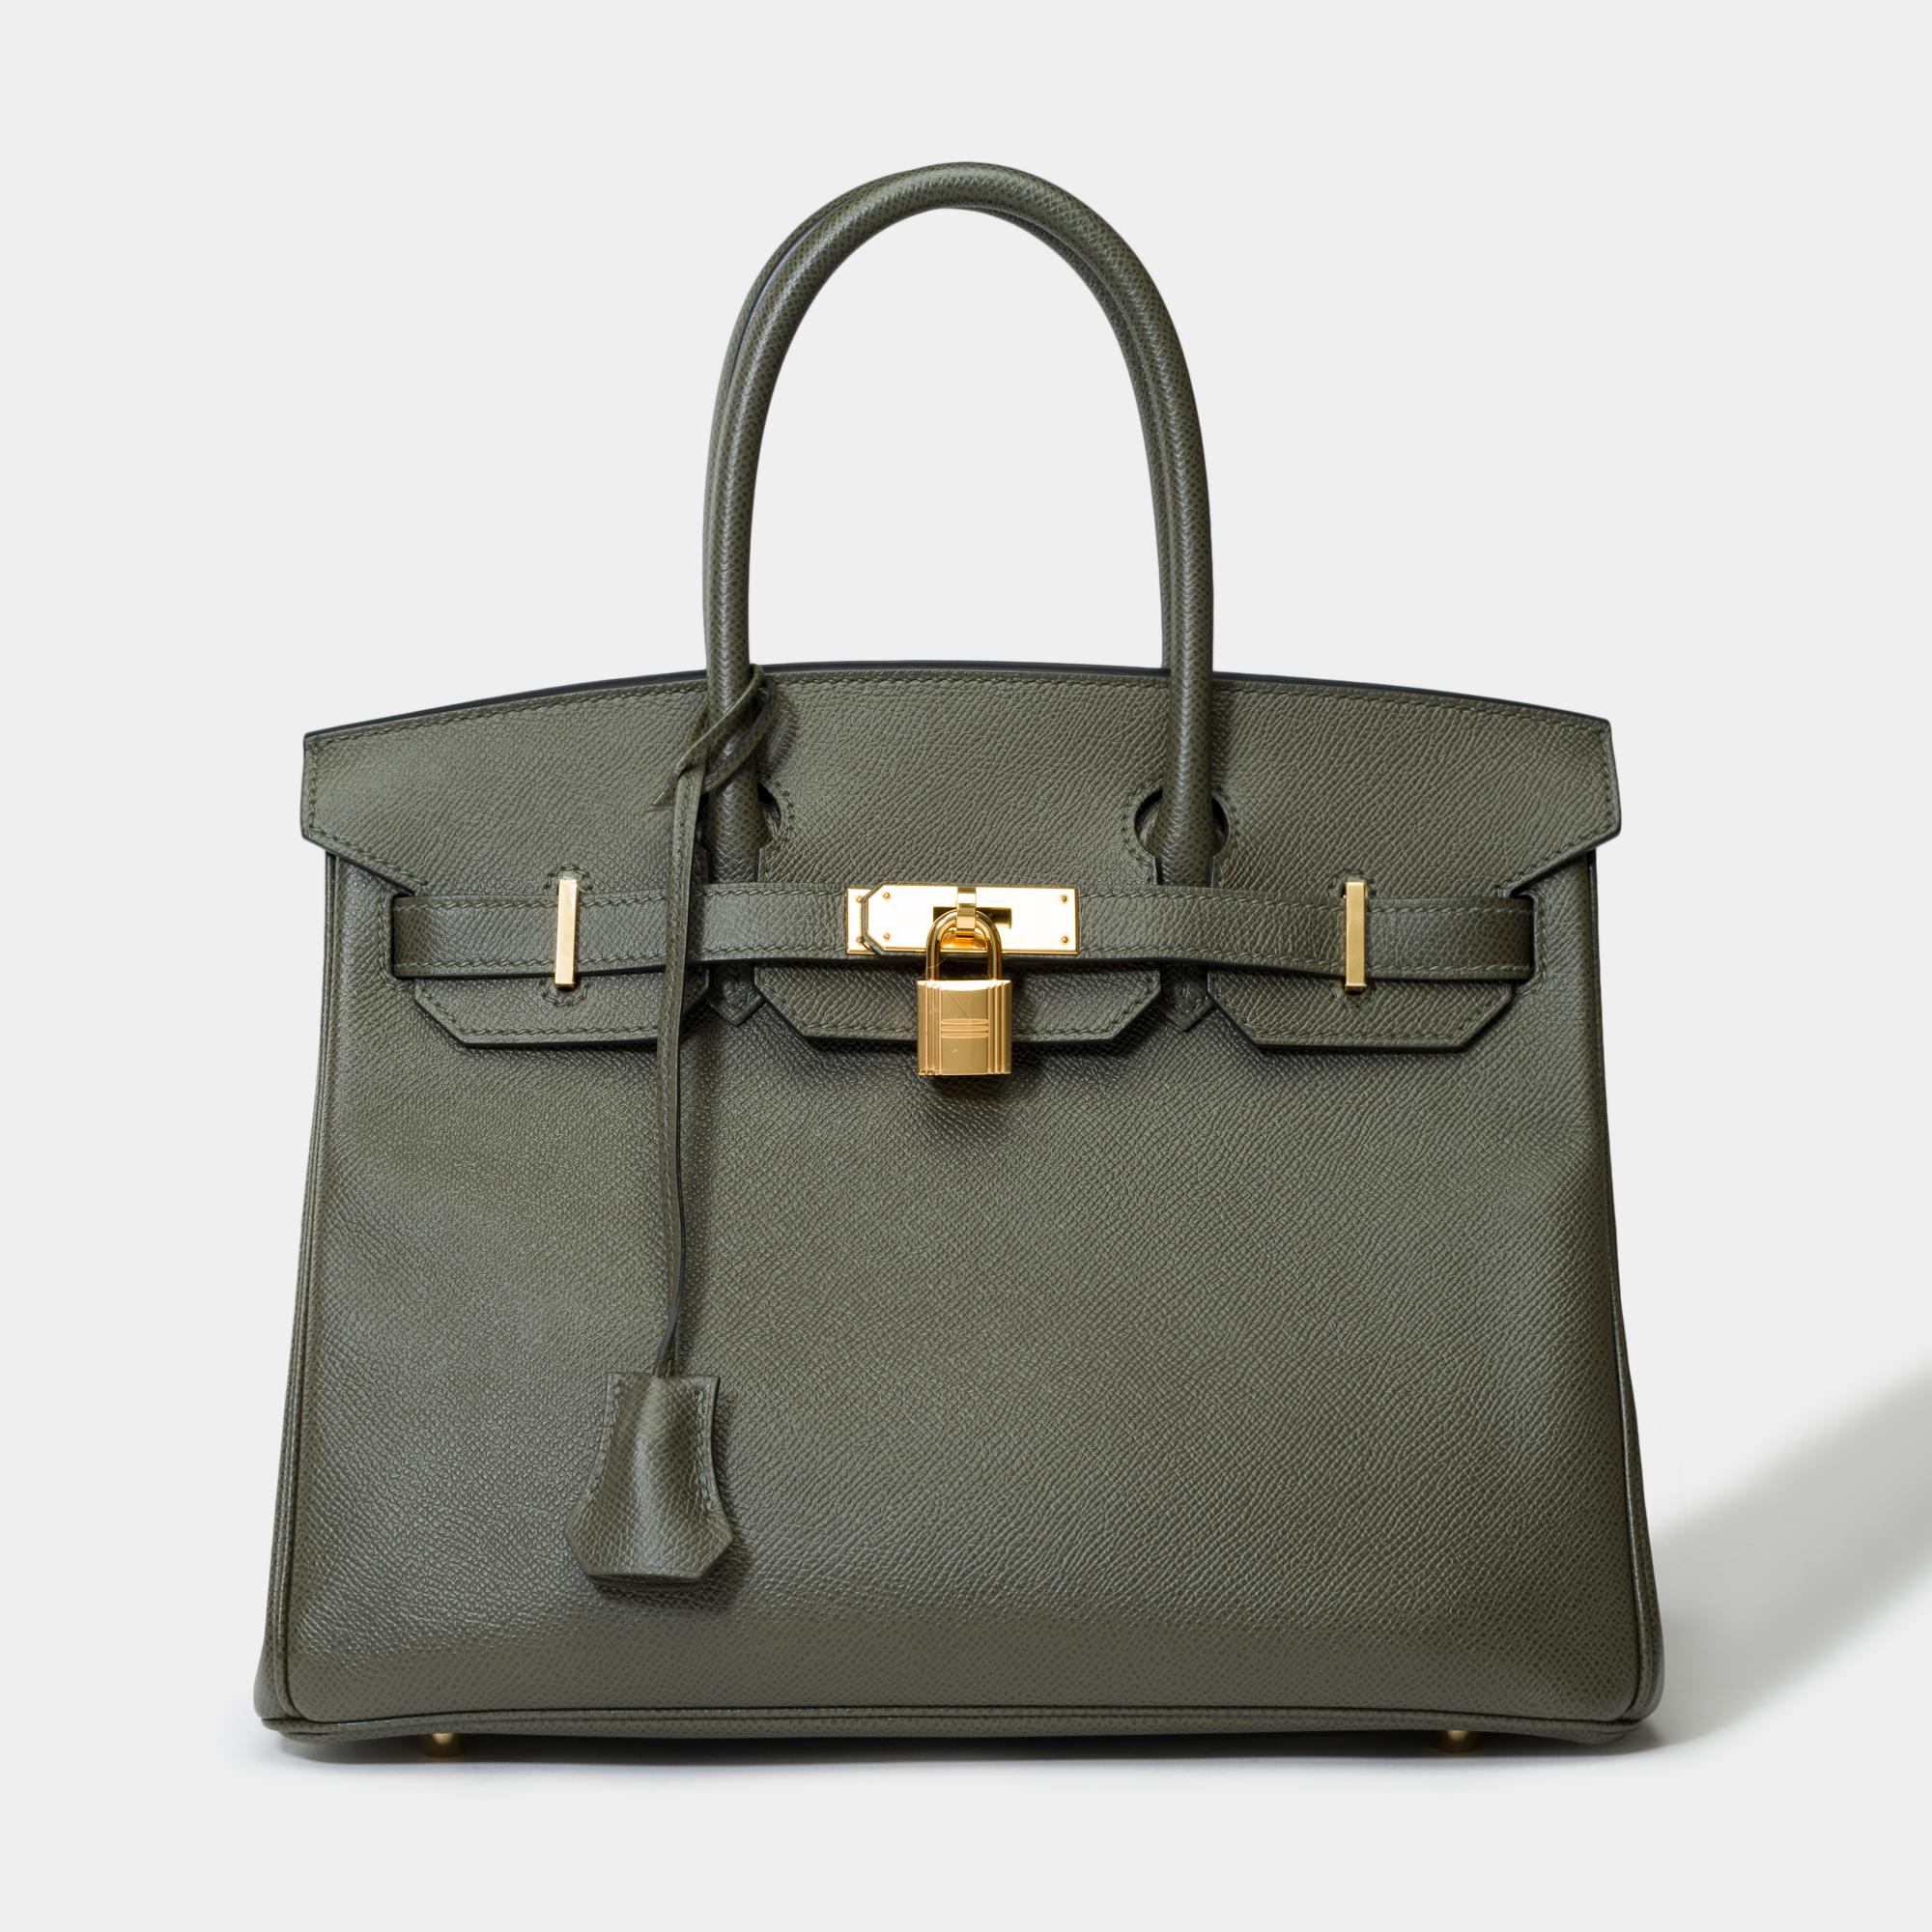 Magnifique sac à main Hermès Birkin 30 en cuir Epsom Vert de Gris, garniture en métal doré, double anse en cuir vert permettant un portage à la main.

Fermeture à rabat
Doublure intérieure en cuir vert, une poche zippée, une poche plaquée
Signature